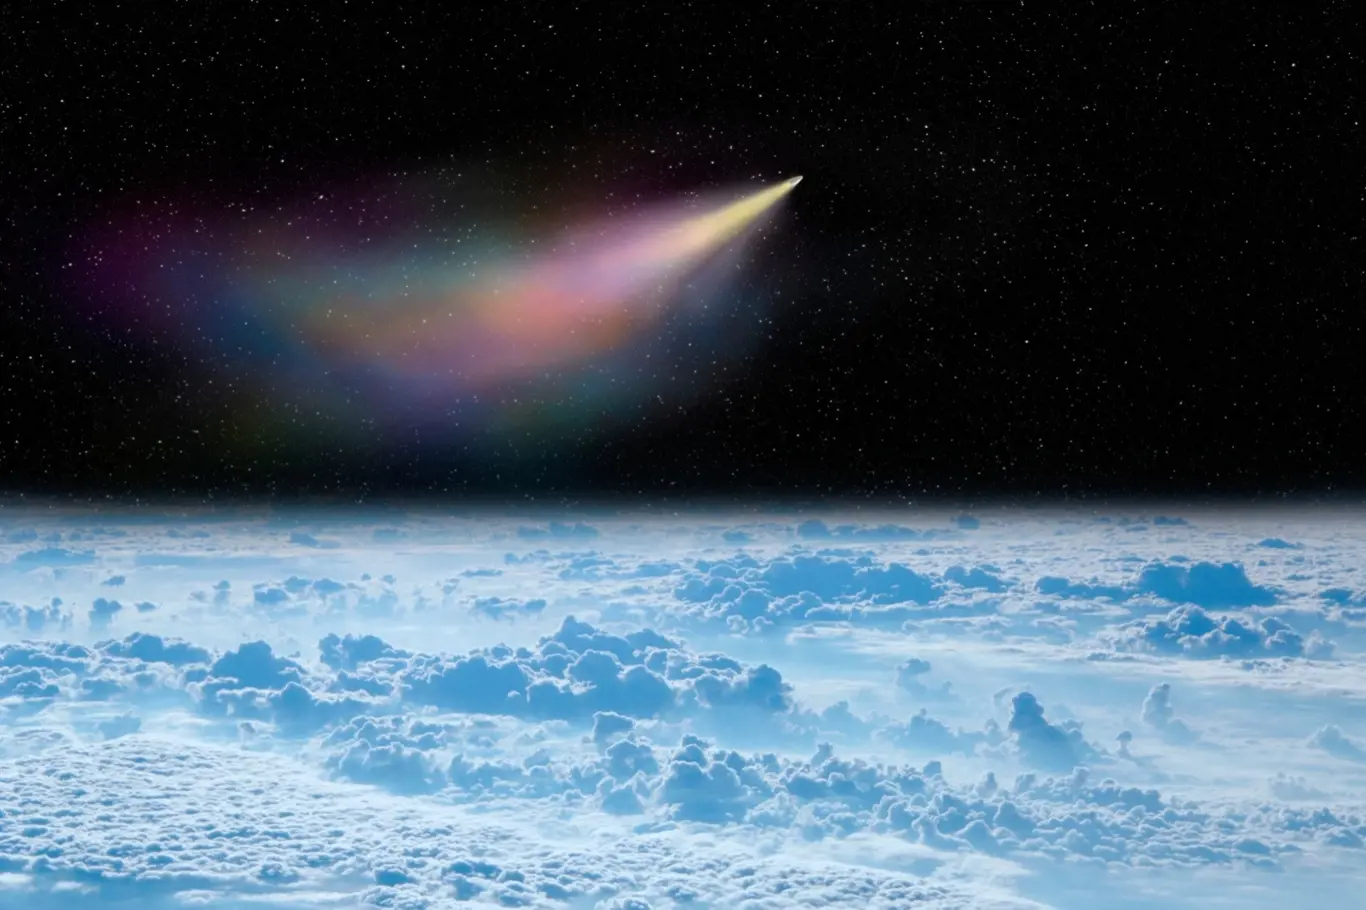 Nově objevená kometa bude viditelná na Zemi.